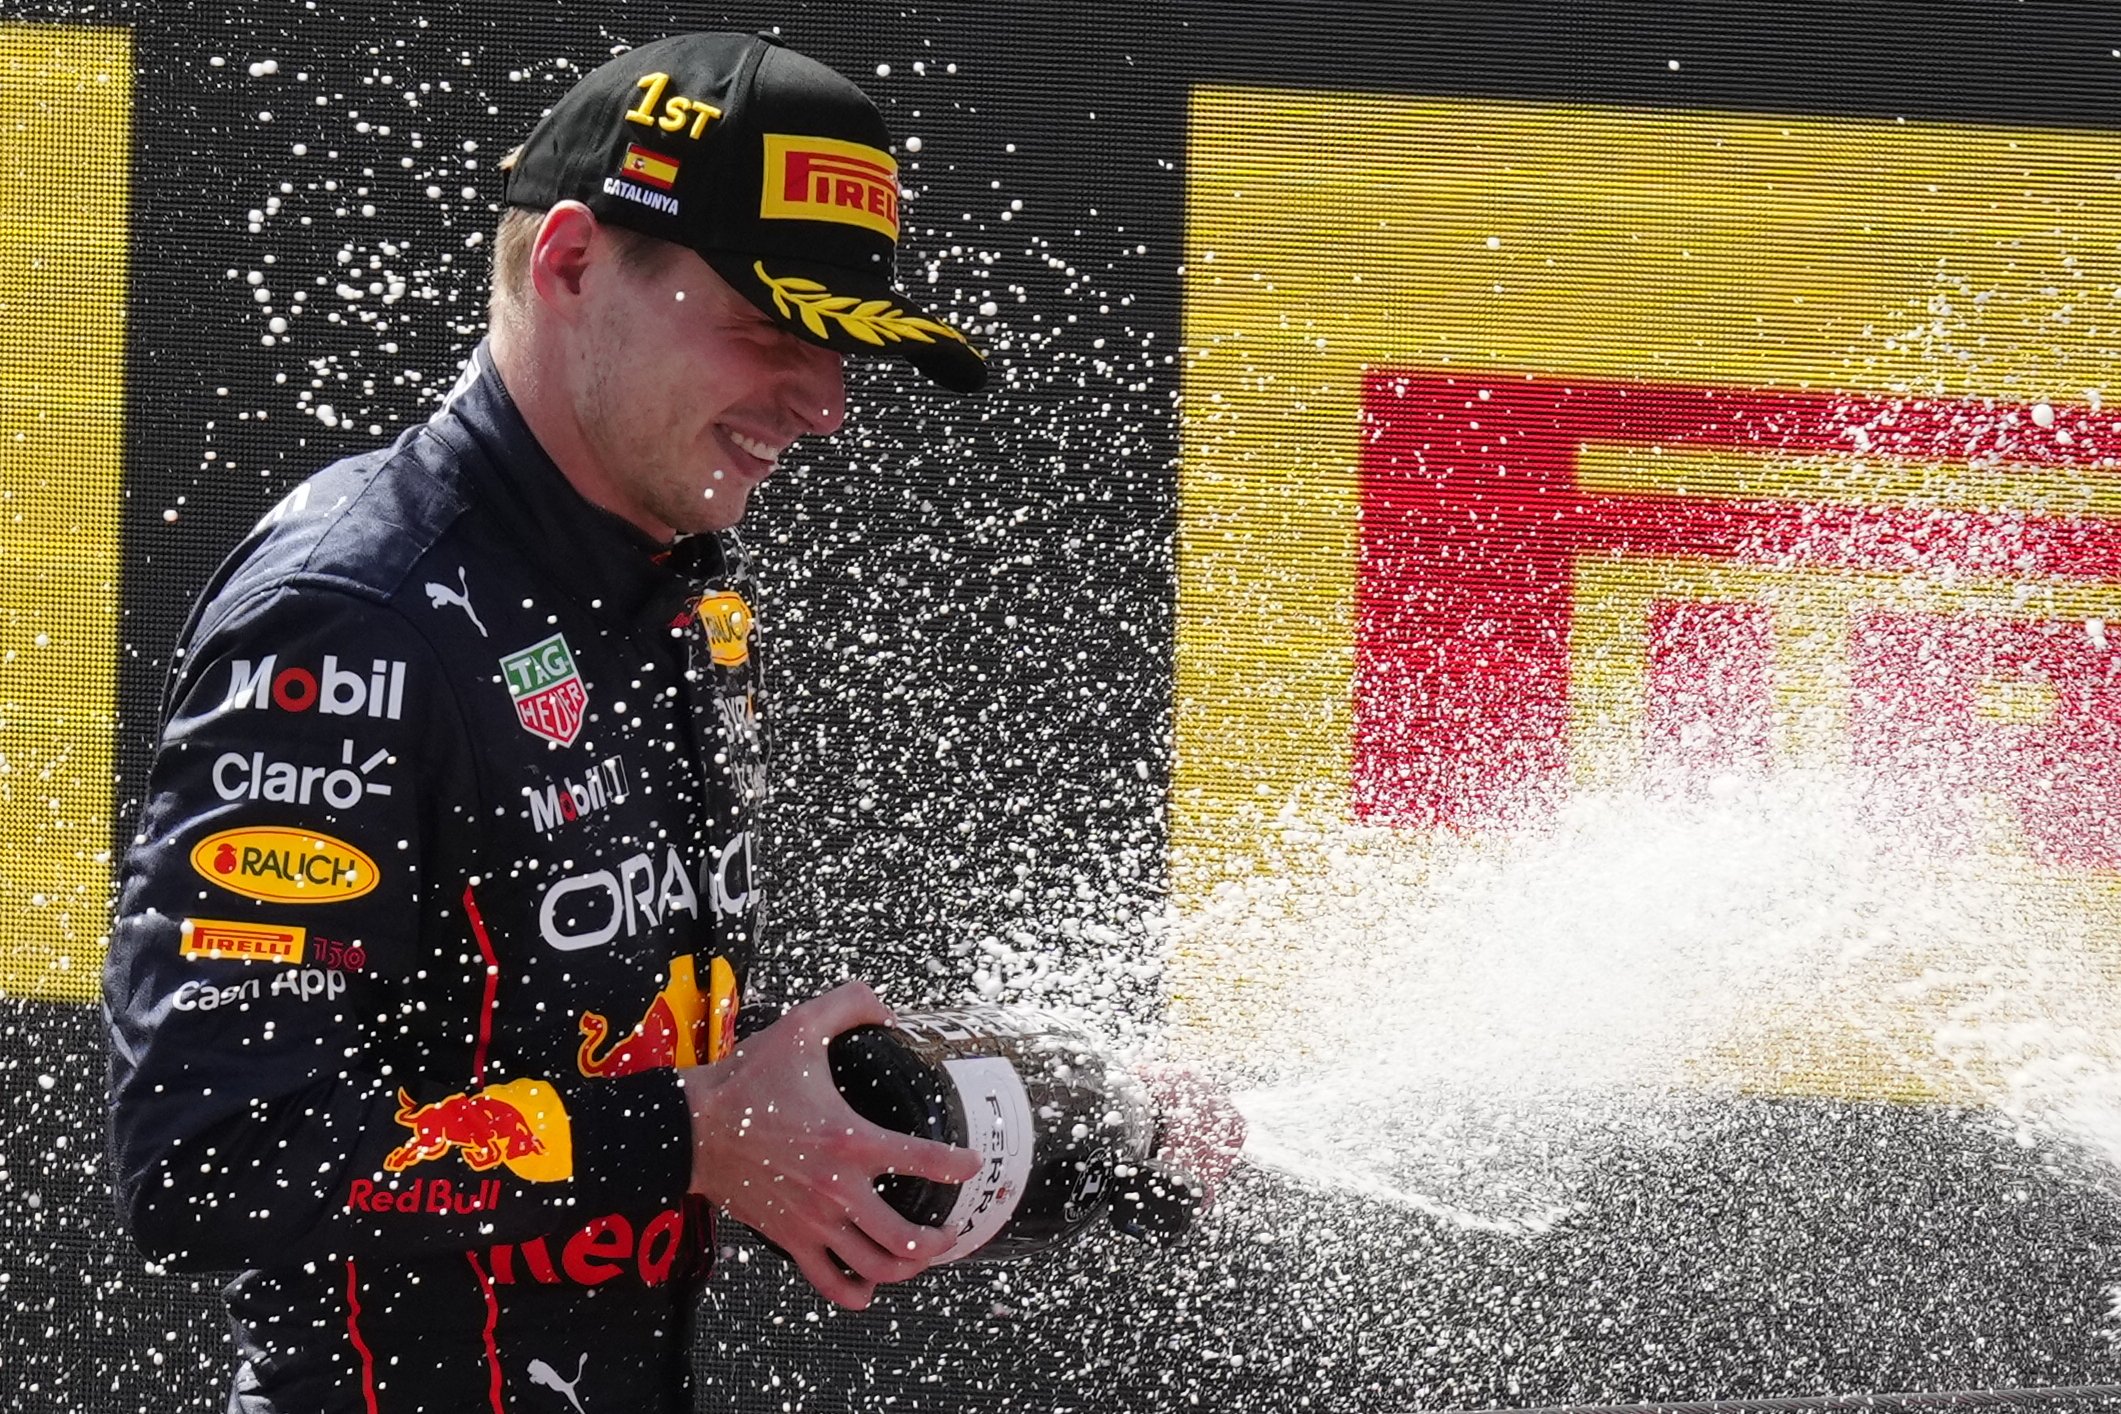 Les millors imatges del Gran Premi d'Espanya de Fórmula 1 celebrat al Circuit de Catalunya